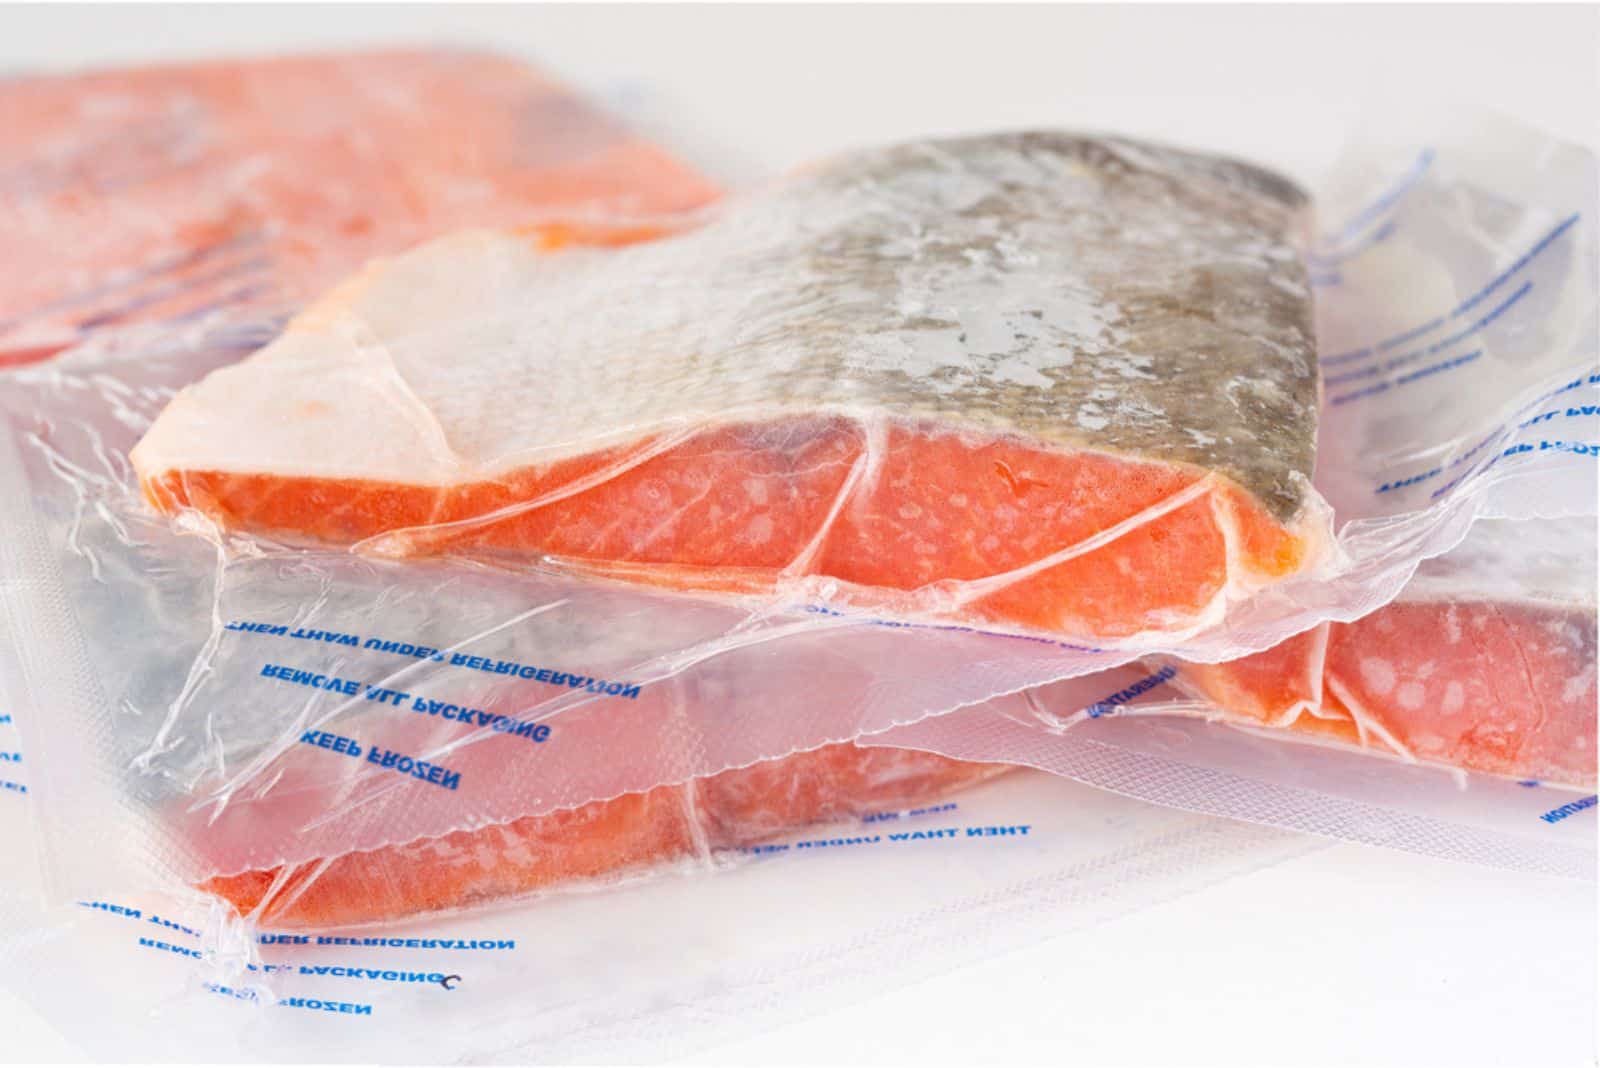 Packs of wild Alaskan frozen sockeye salmon wrapped in plastic